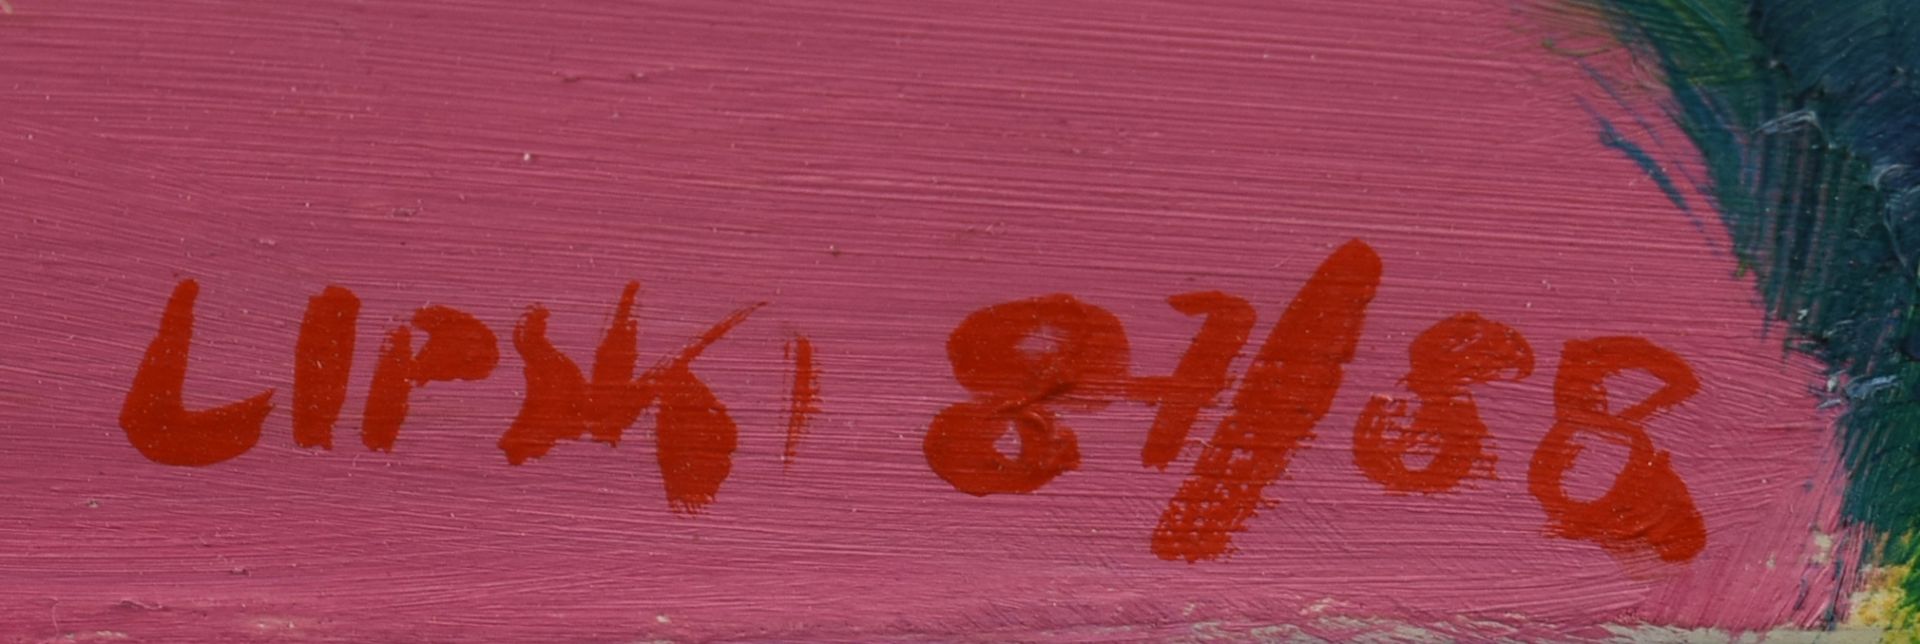 Lipski Öl/Holz, abstrakte Darstellung mit Stierkopf, unten signiert und datiert (19)87/88, breite - Bild 4 aus 4